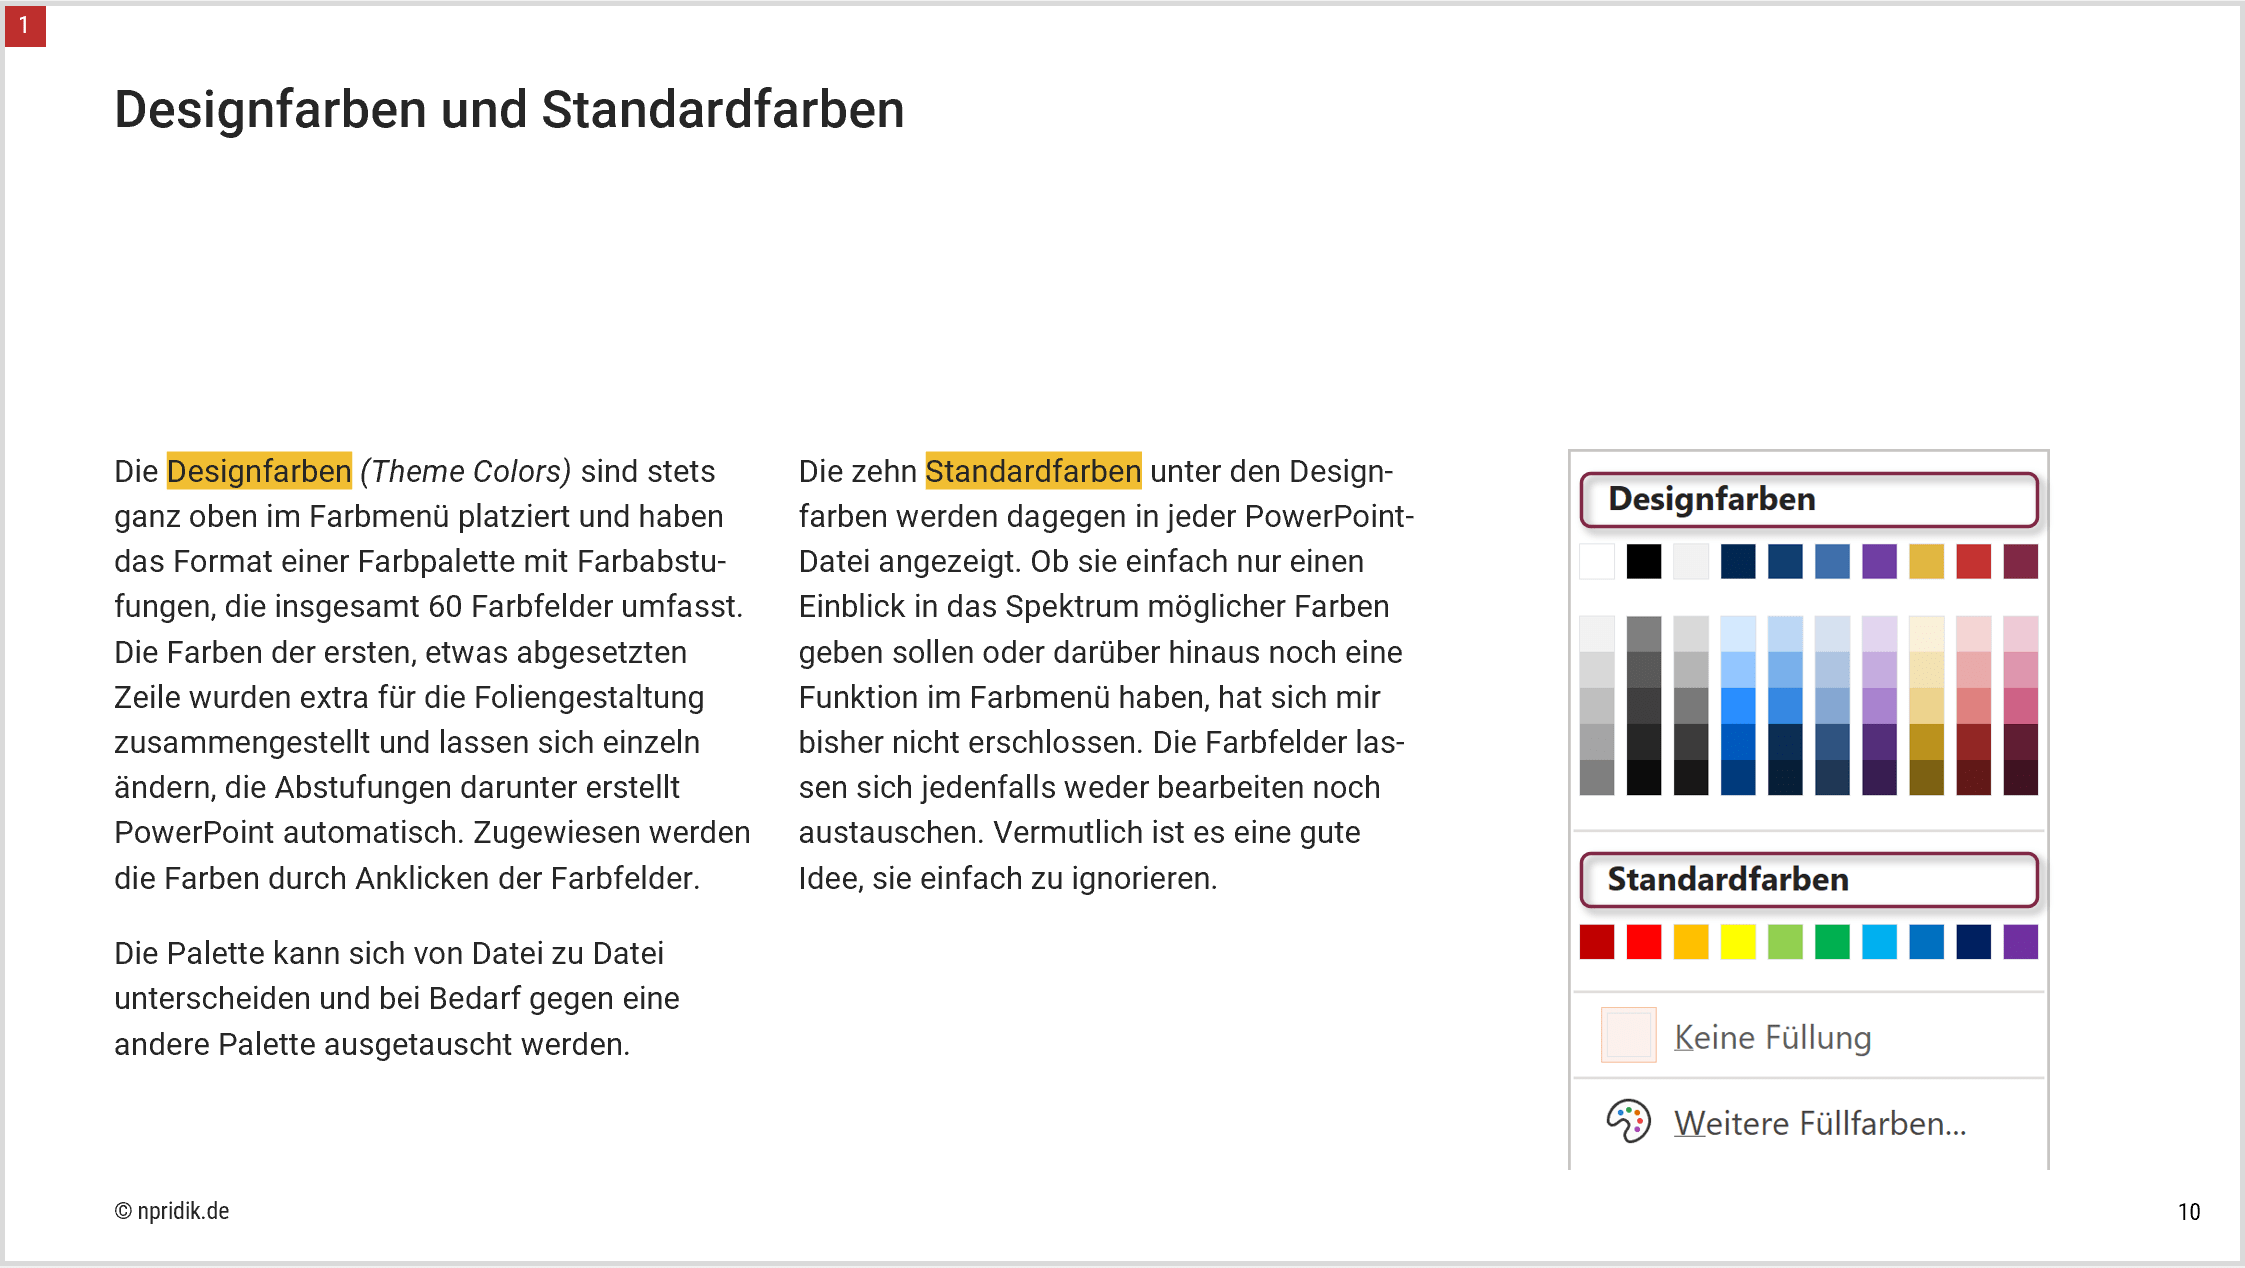 Auf der Seite mit dem Titel Designfarben und Standardfarben ist am Anfang der beiden Textspalten das Wort Designfarben bzw. Standardfarben farblich markiert.